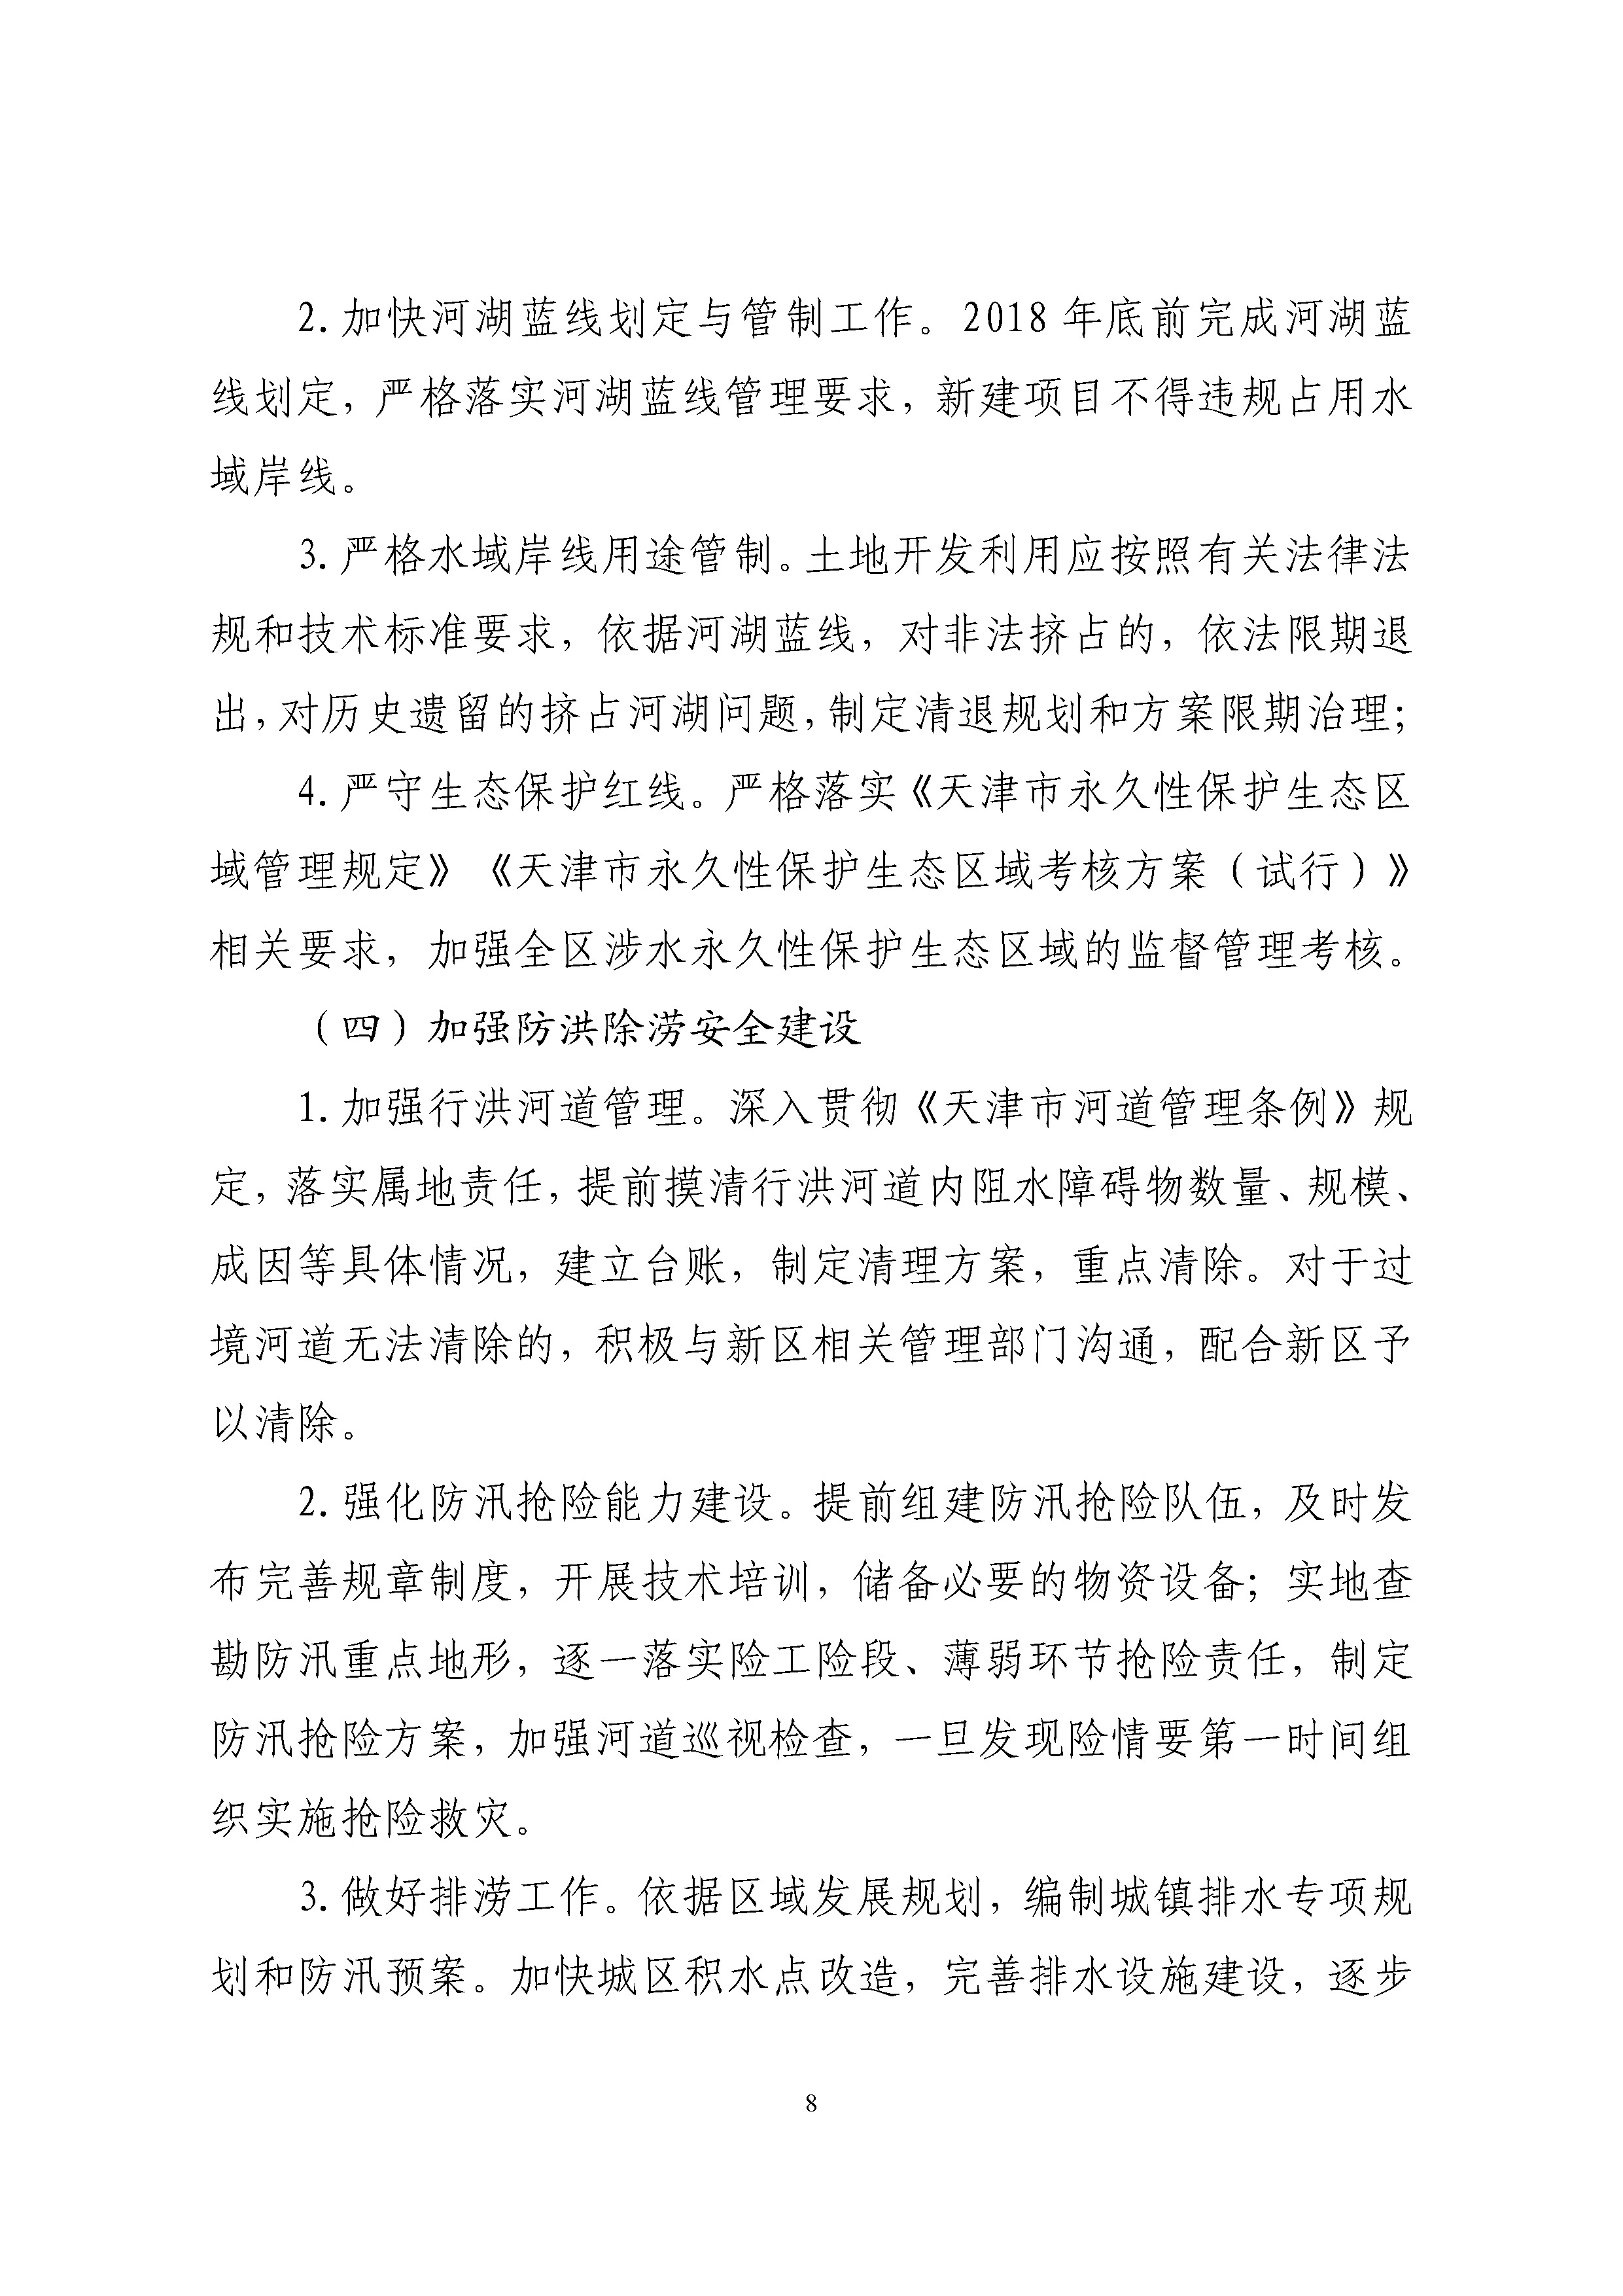 中新天津生态城全面推行河长制实施方案 -挂网_页面_09.jpg